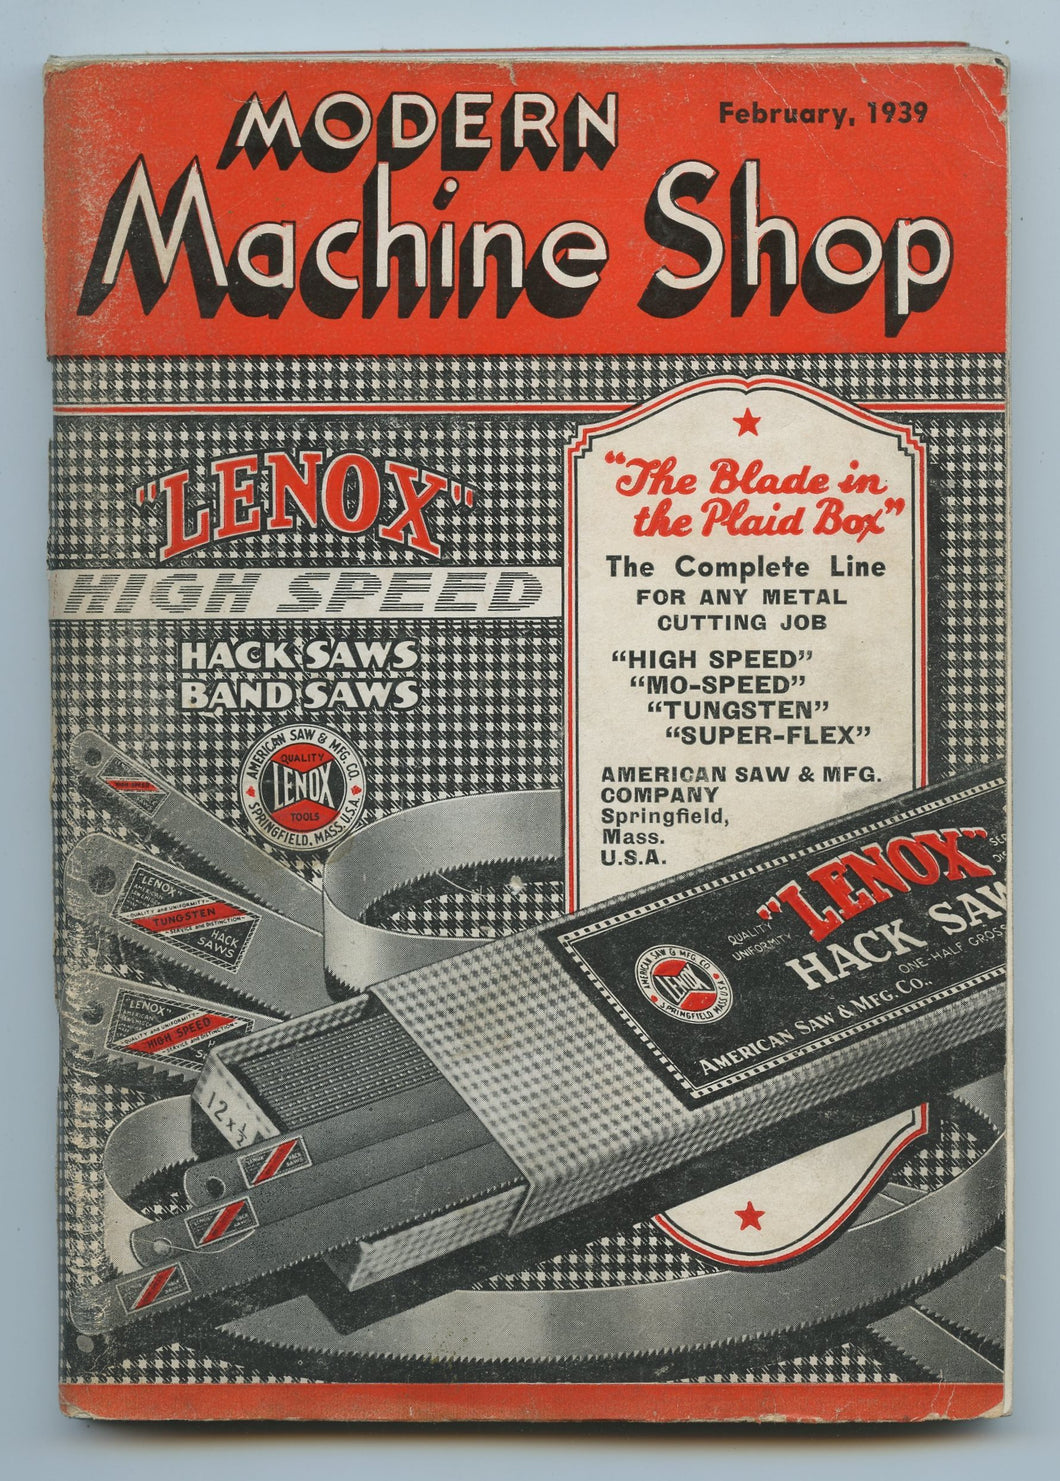 Modern Machine Shop, February 1939